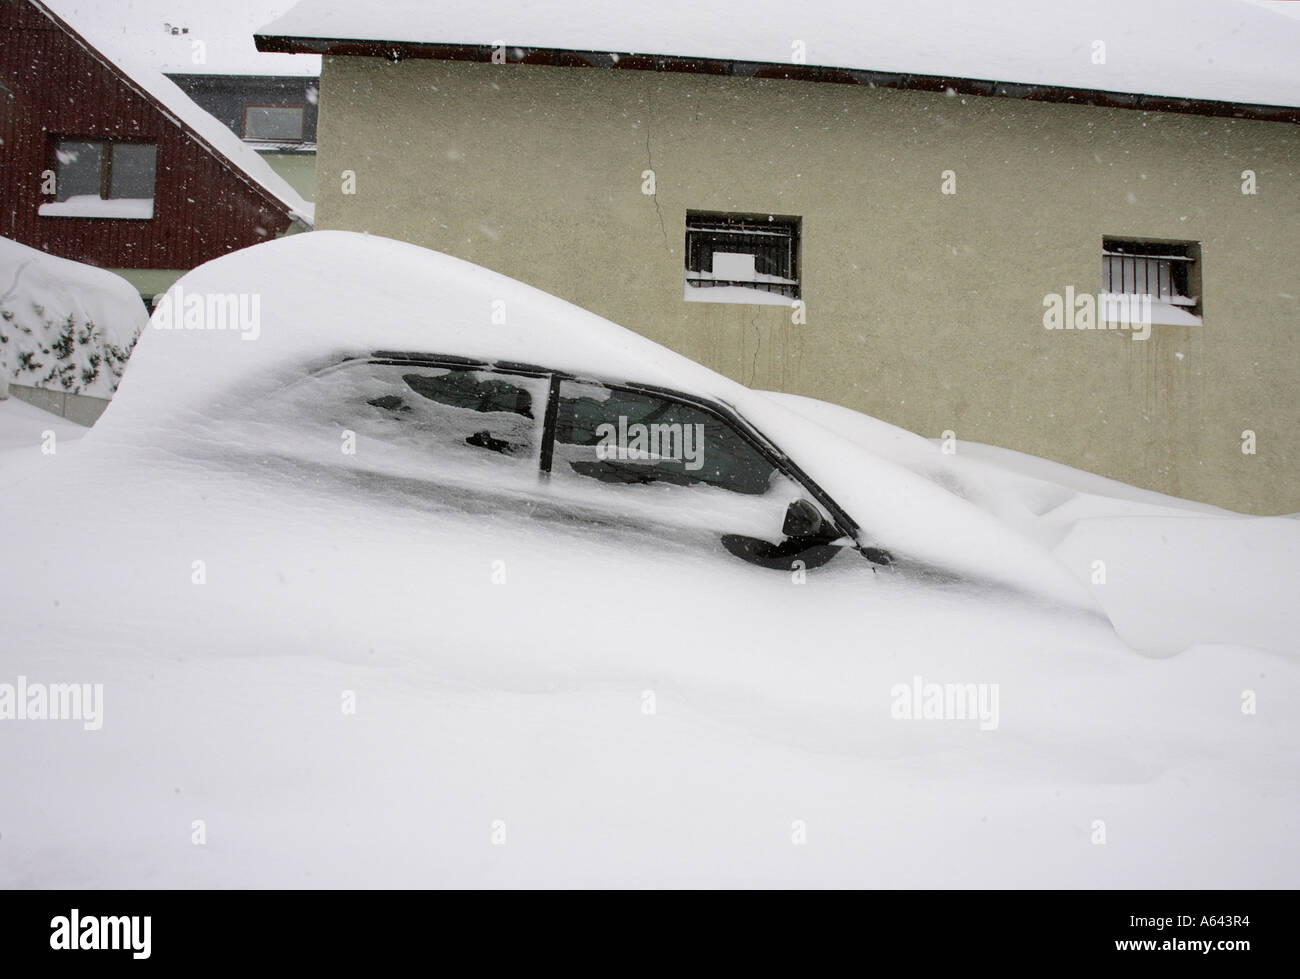 Nevicato in auto a Oberwiesenthal, Monti Metalliferi, Erz Monti Metalliferi, Bassa Sassonia, Germania Foto Stock